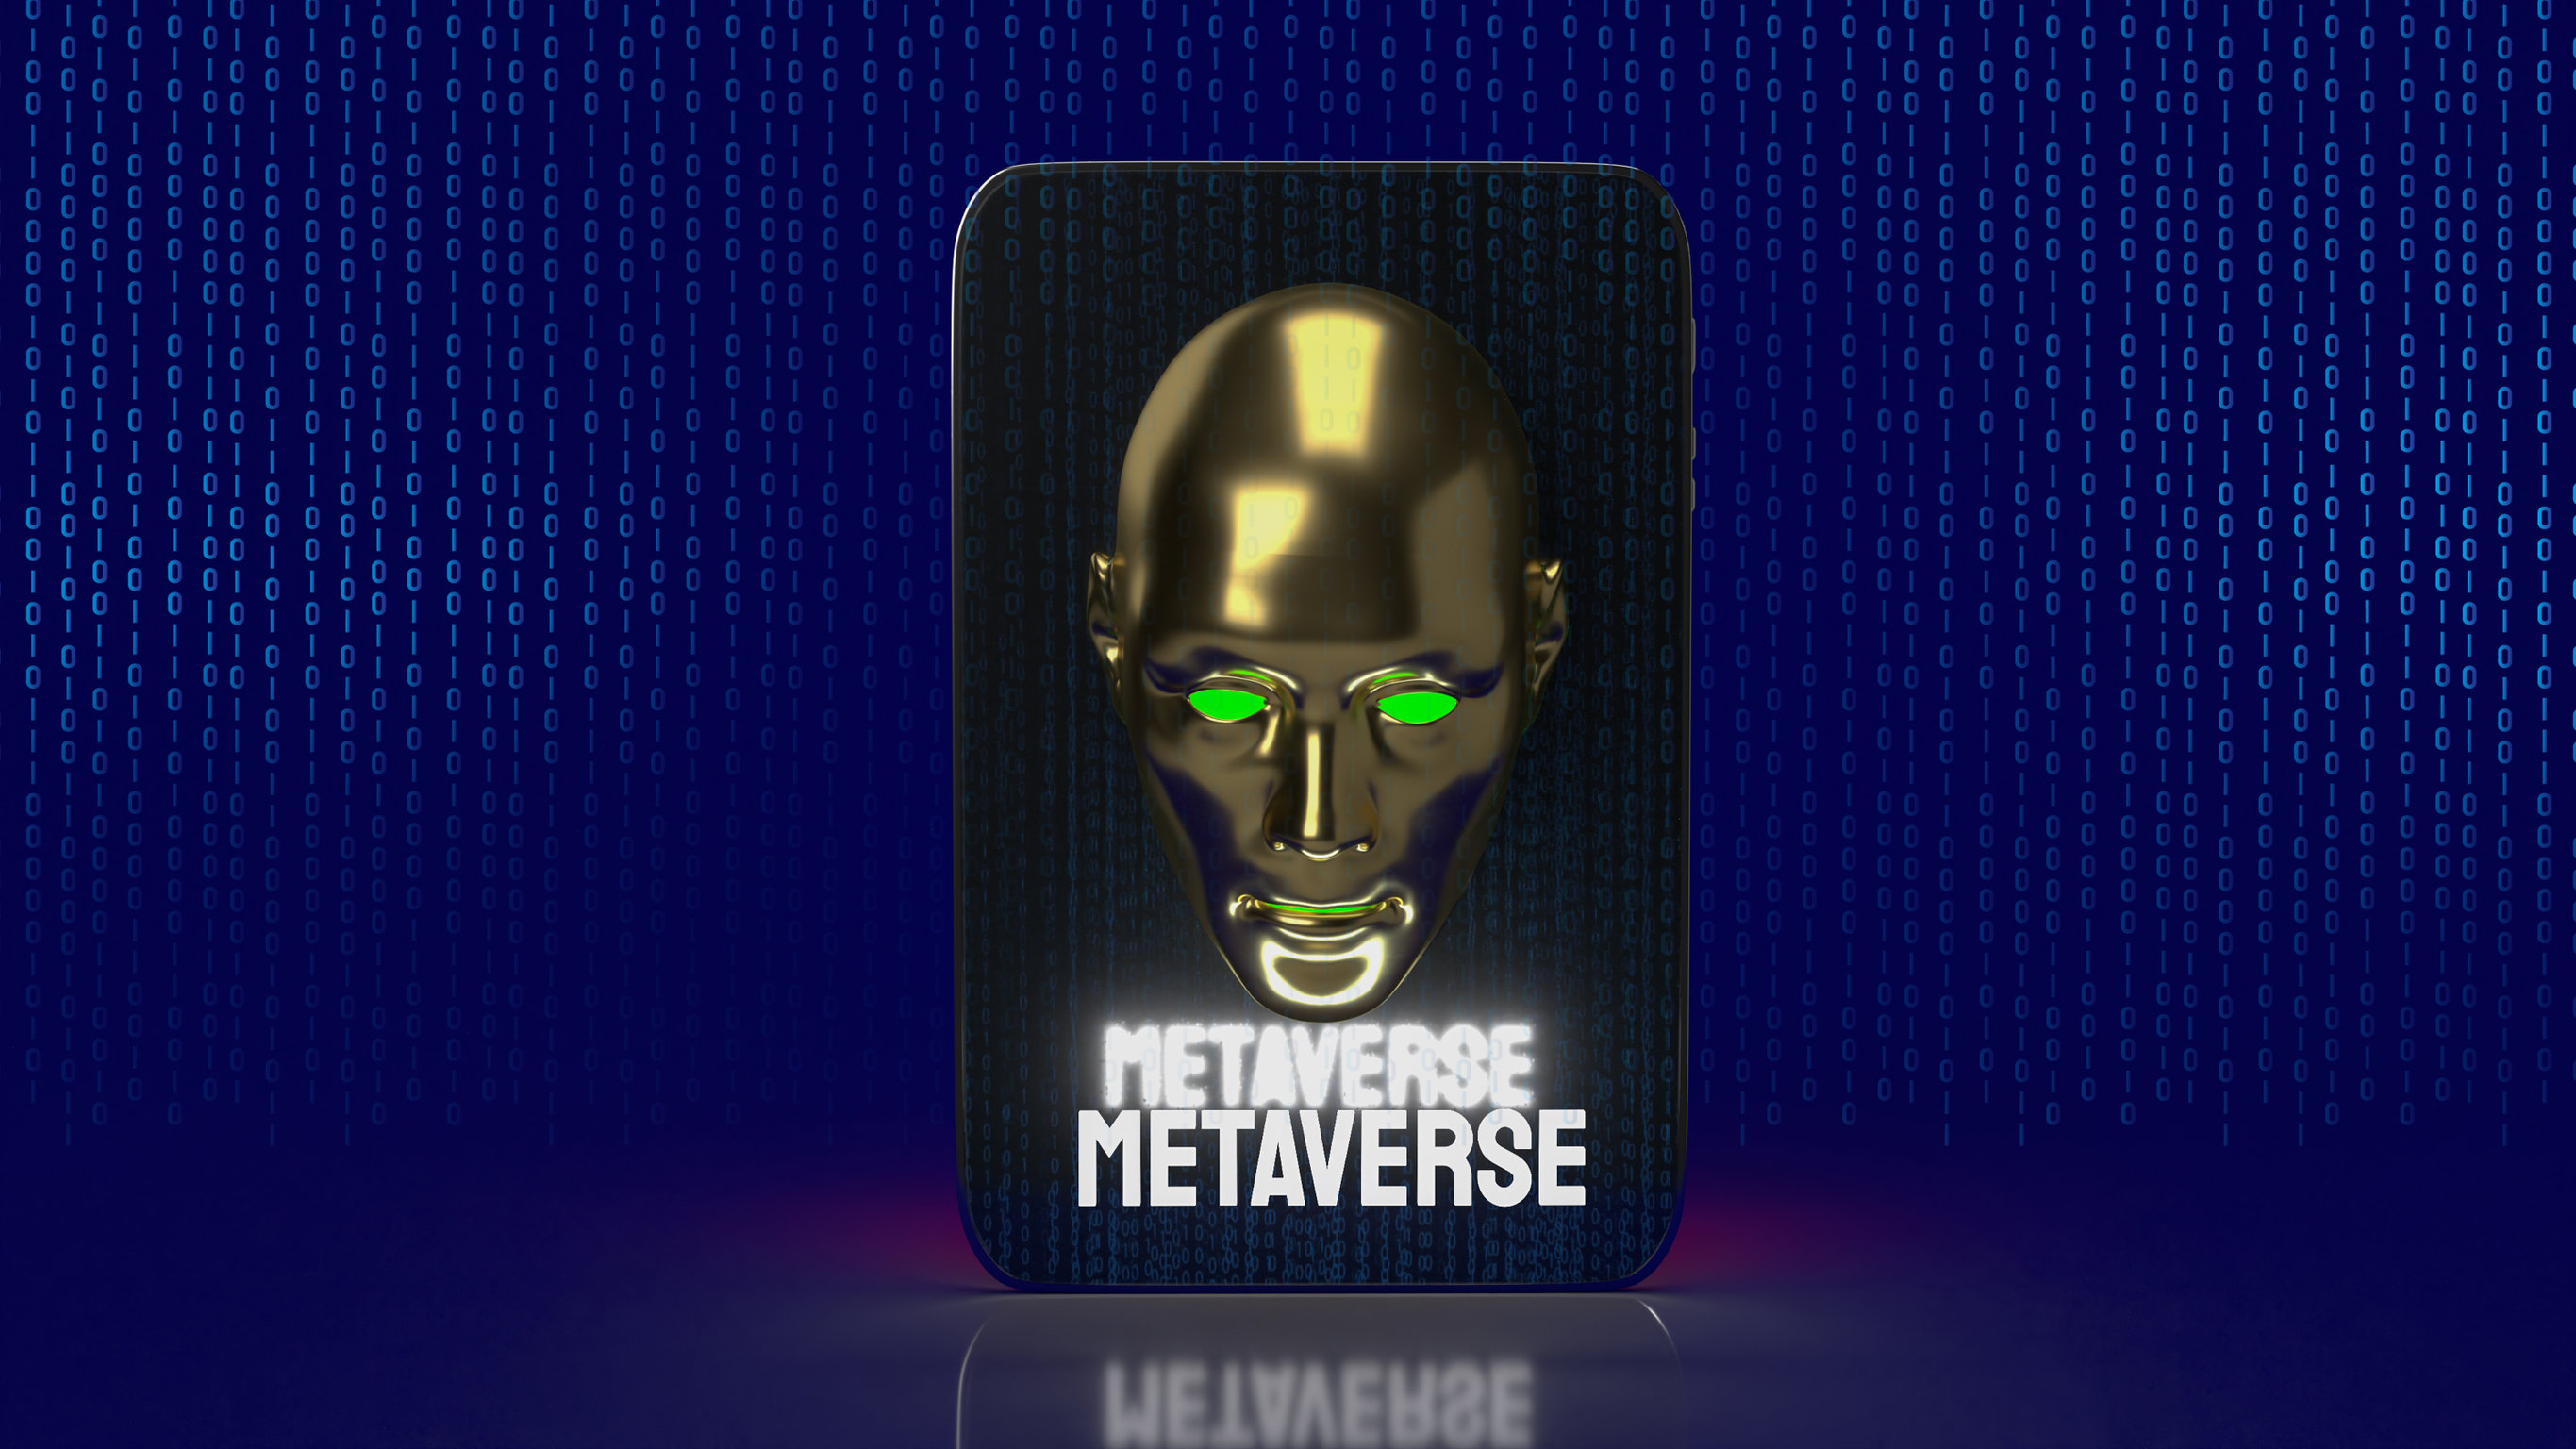 Metaverse logo